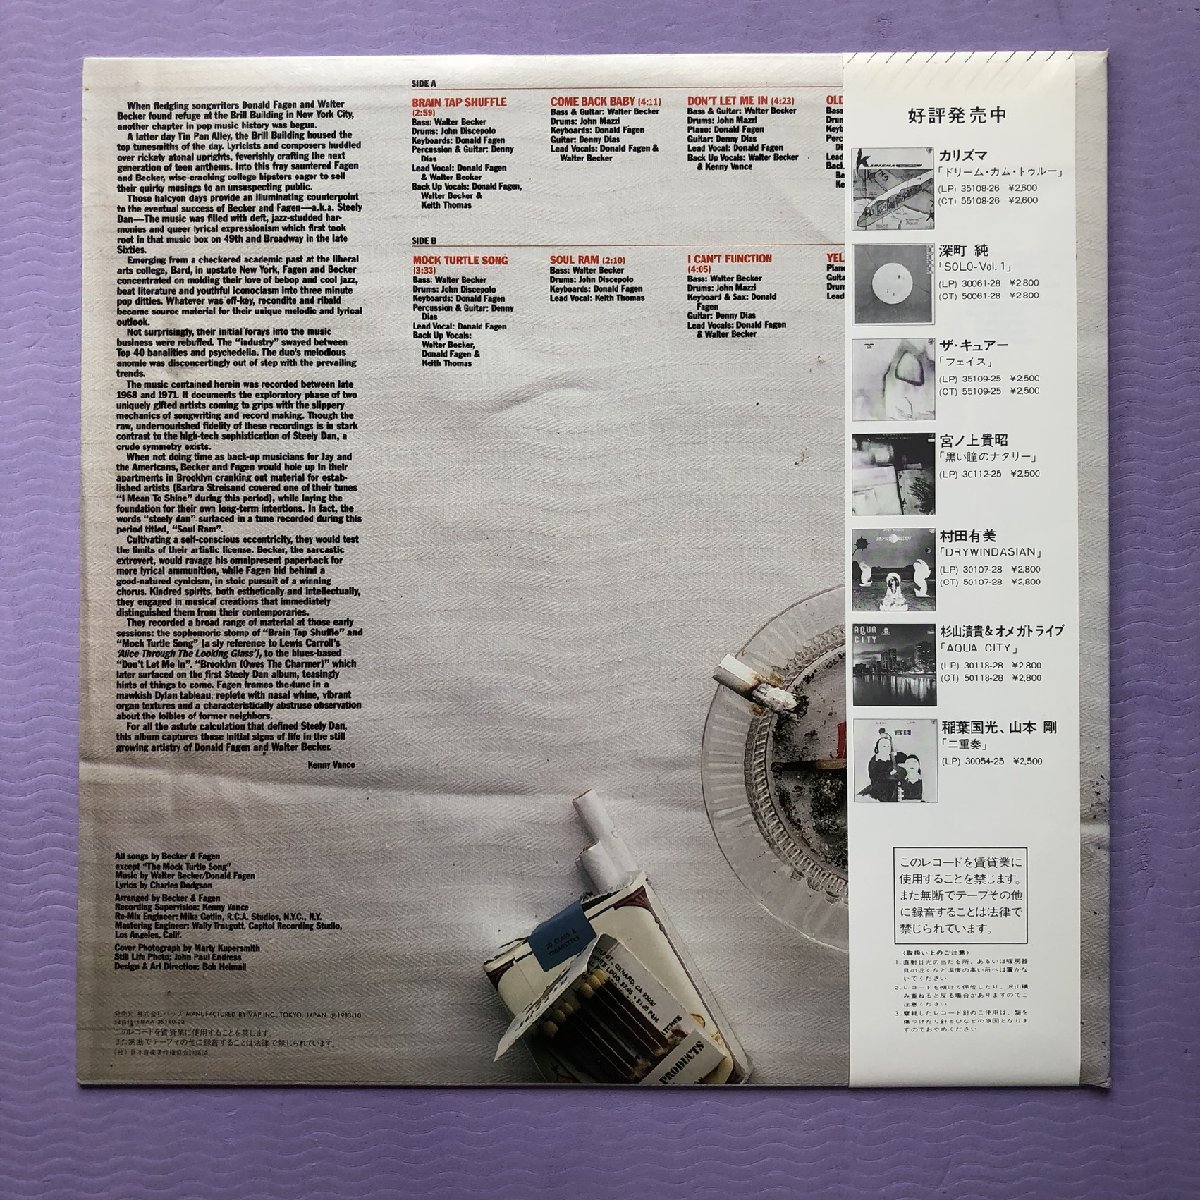 傷なし美盤 美ジャケ 超貴重盤 Walter Becker & Donald Fagen (Steely Dan) 1983年 LPレコード The Early Years 国内盤 帯付_画像2